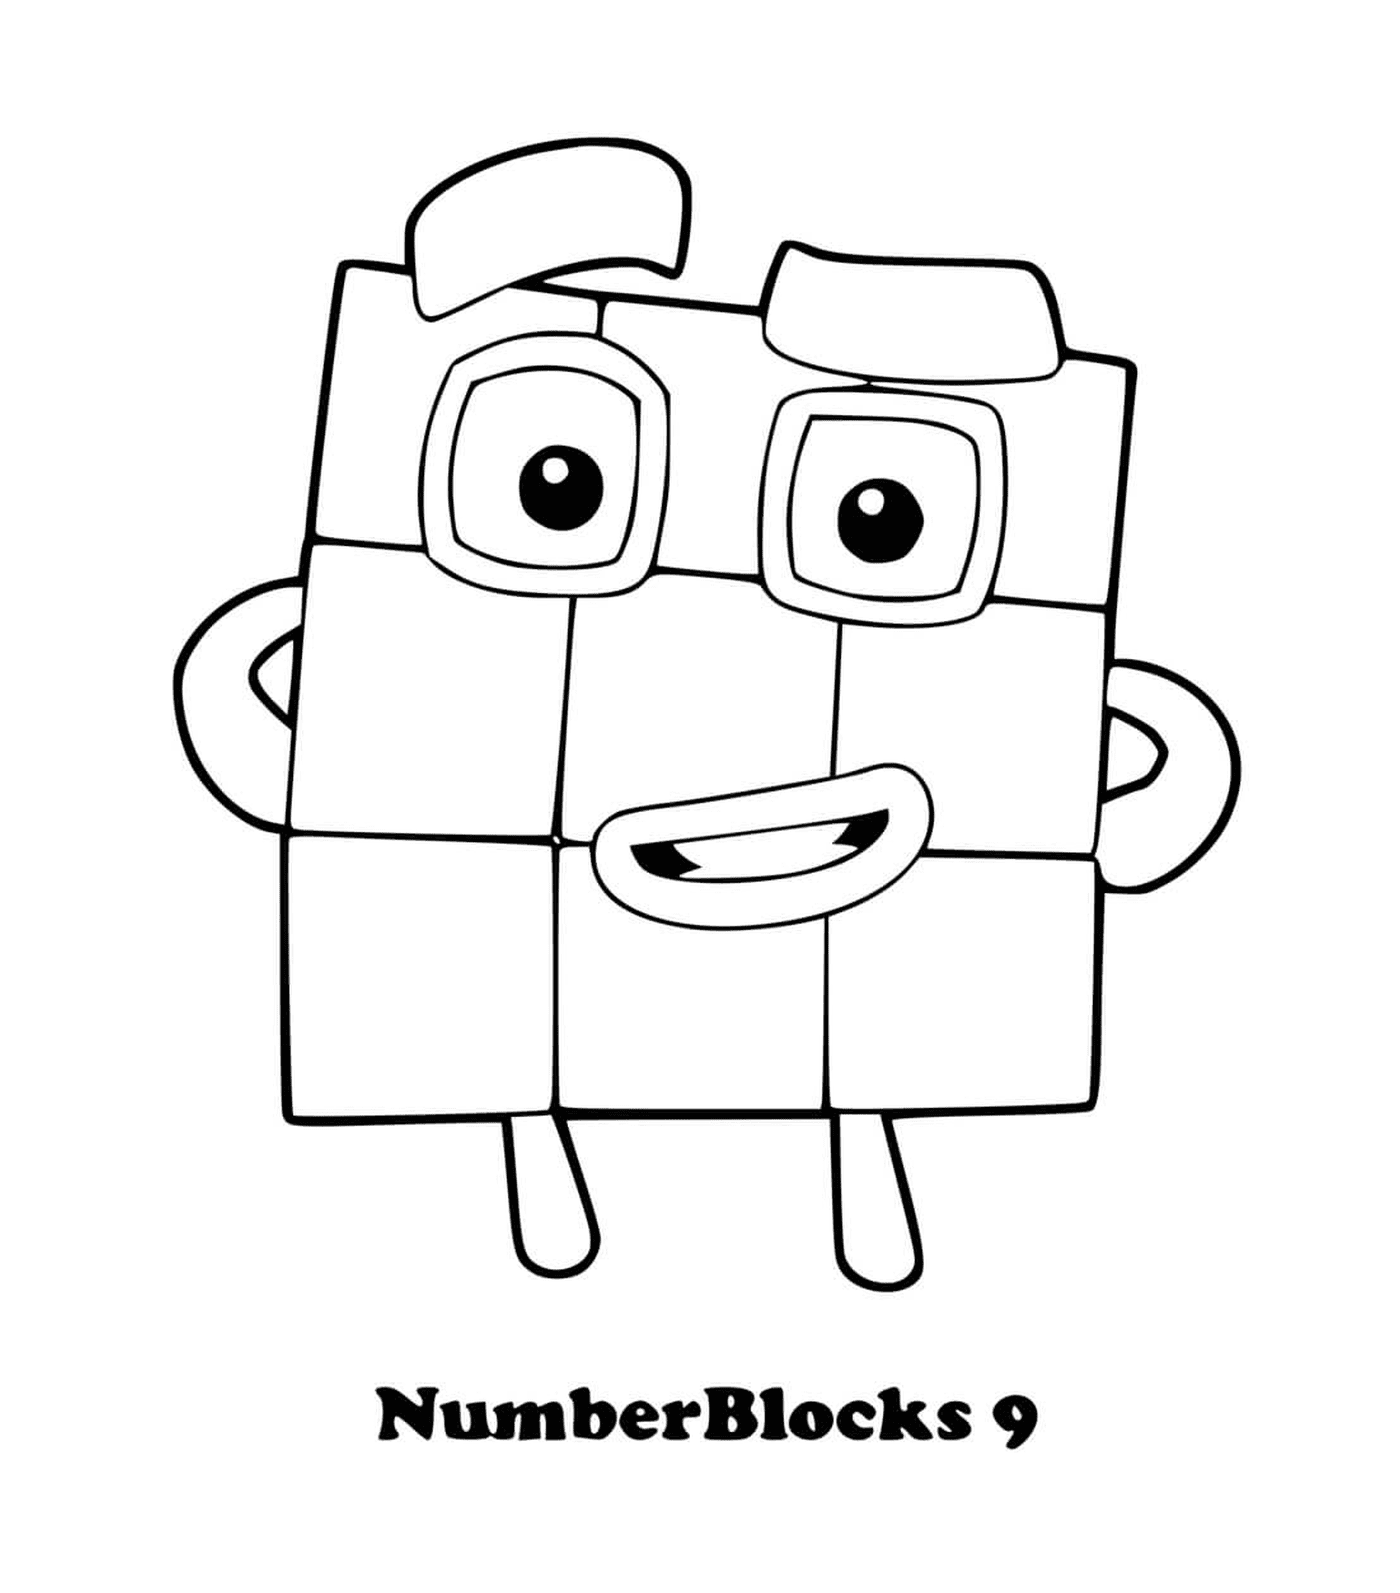   Numéro 9 des Numberblocks, un carré avec des yeux 